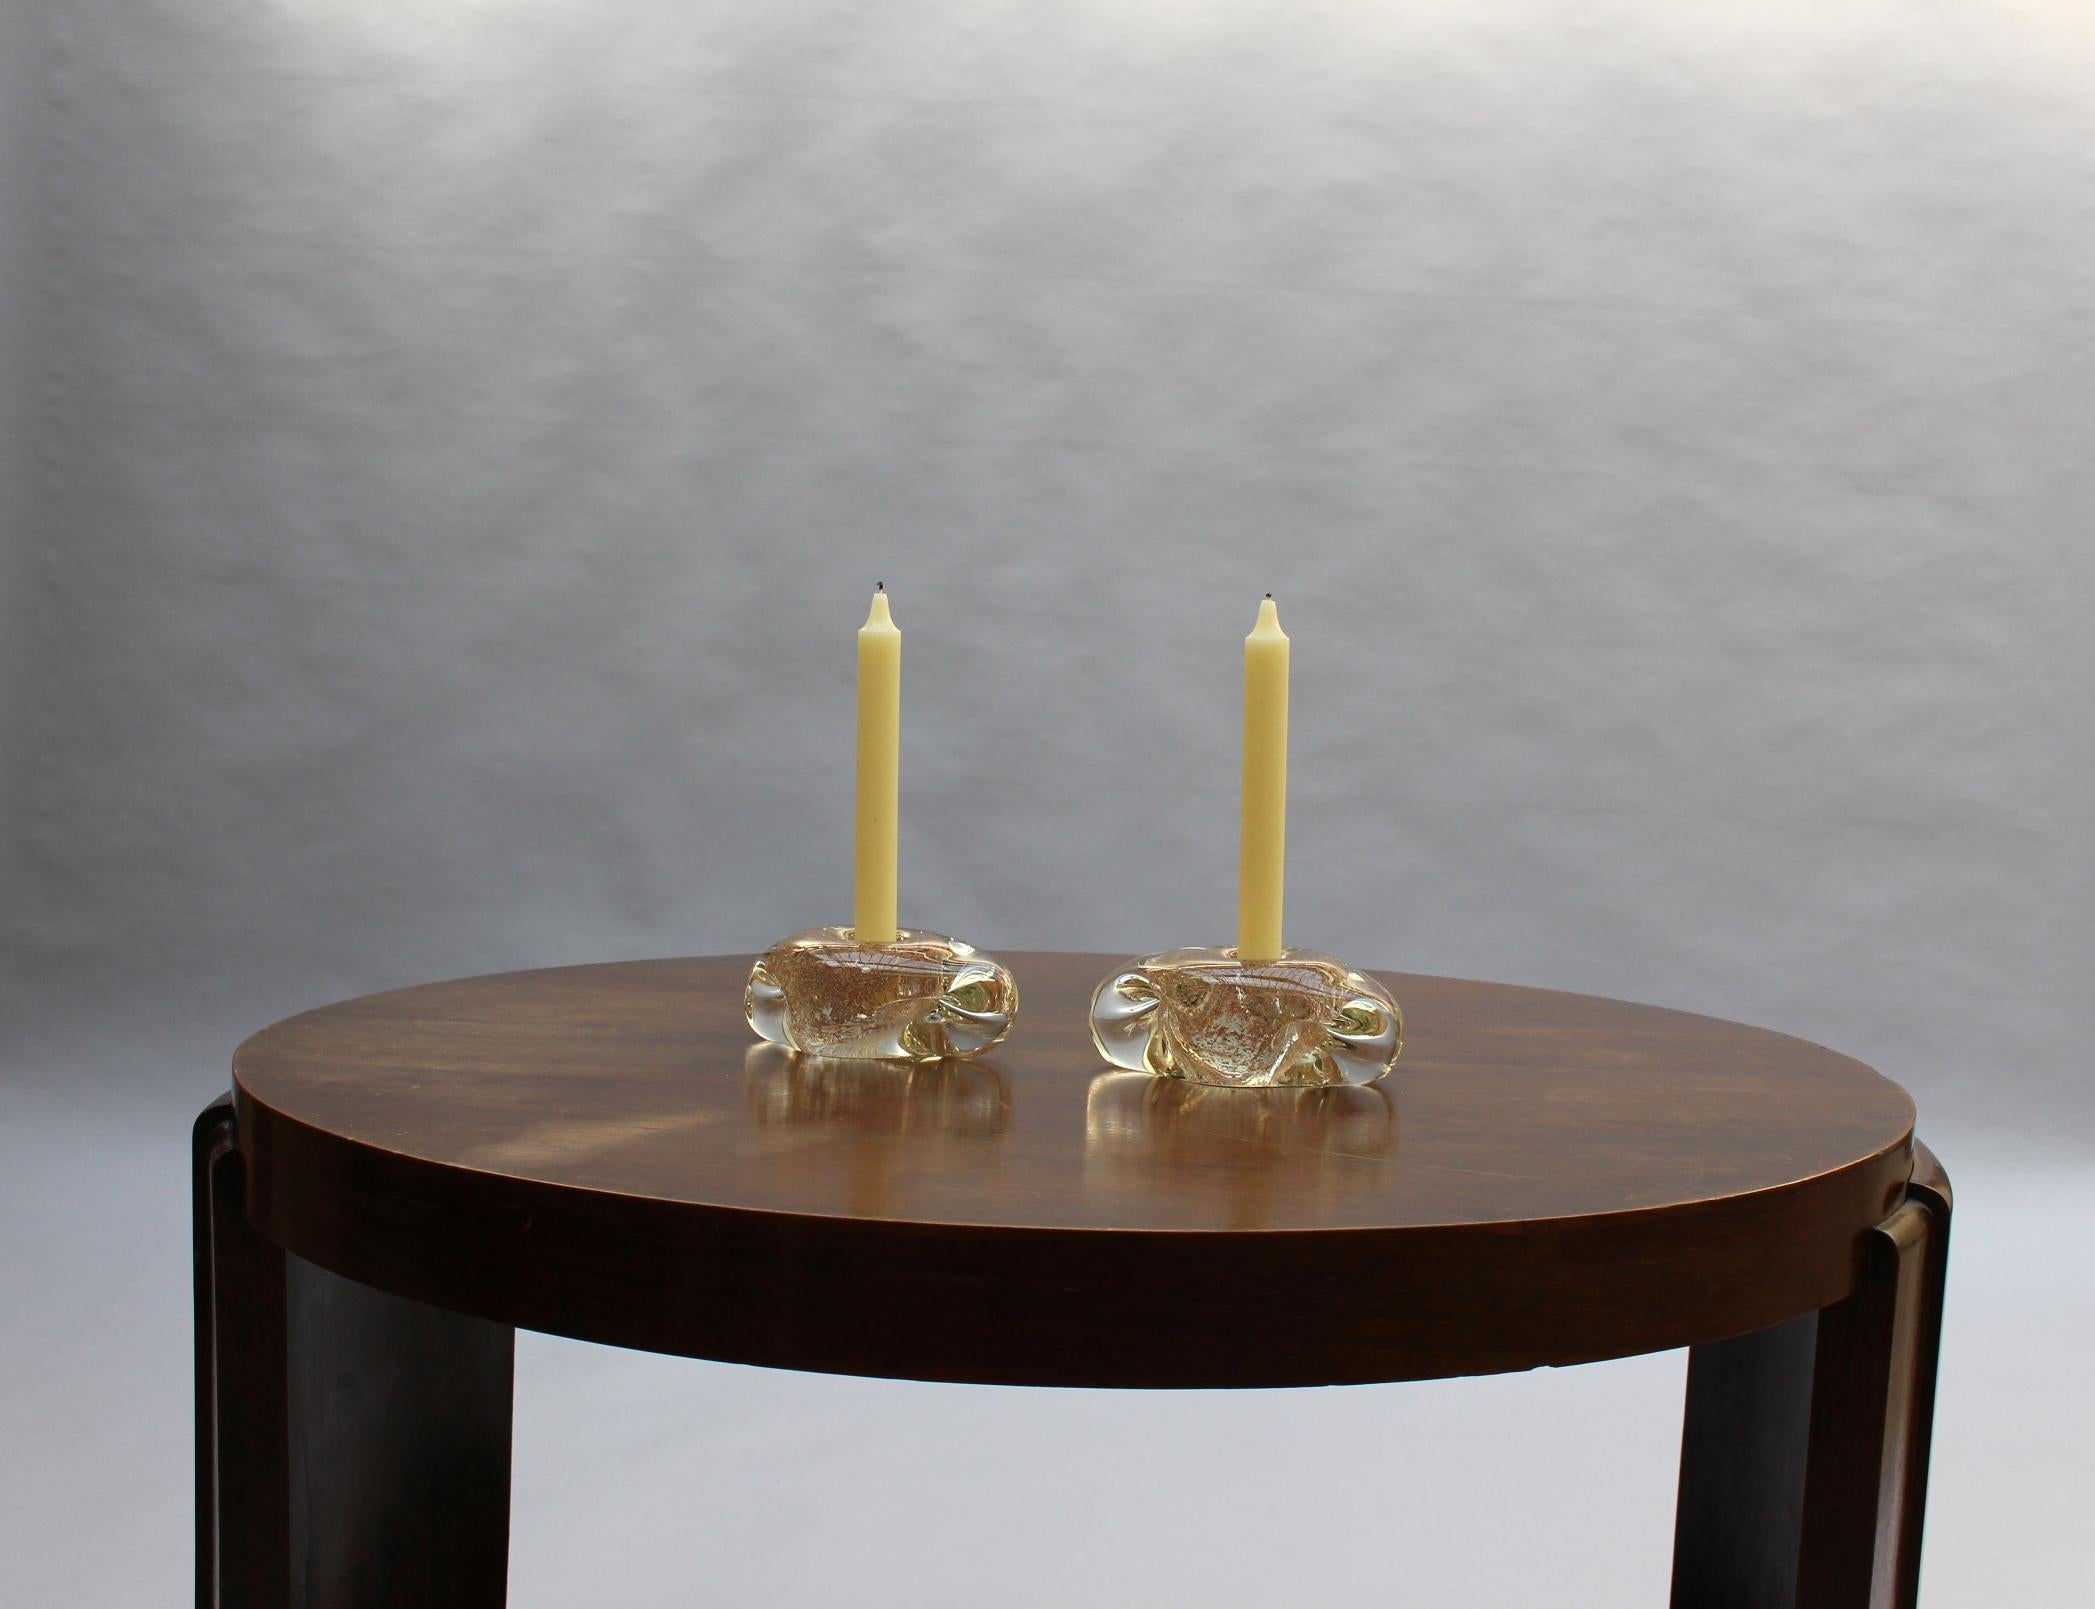 André THURET (1898-1965) - Ein Paar feiner Kerzenständer aus Klarglas mit Einschlüssen von Metalloxiden

Signiert auf der Unterseite mit Diamantspitze: Andre Thuret

Die angegebenen Maße sind die größeren der beiden.